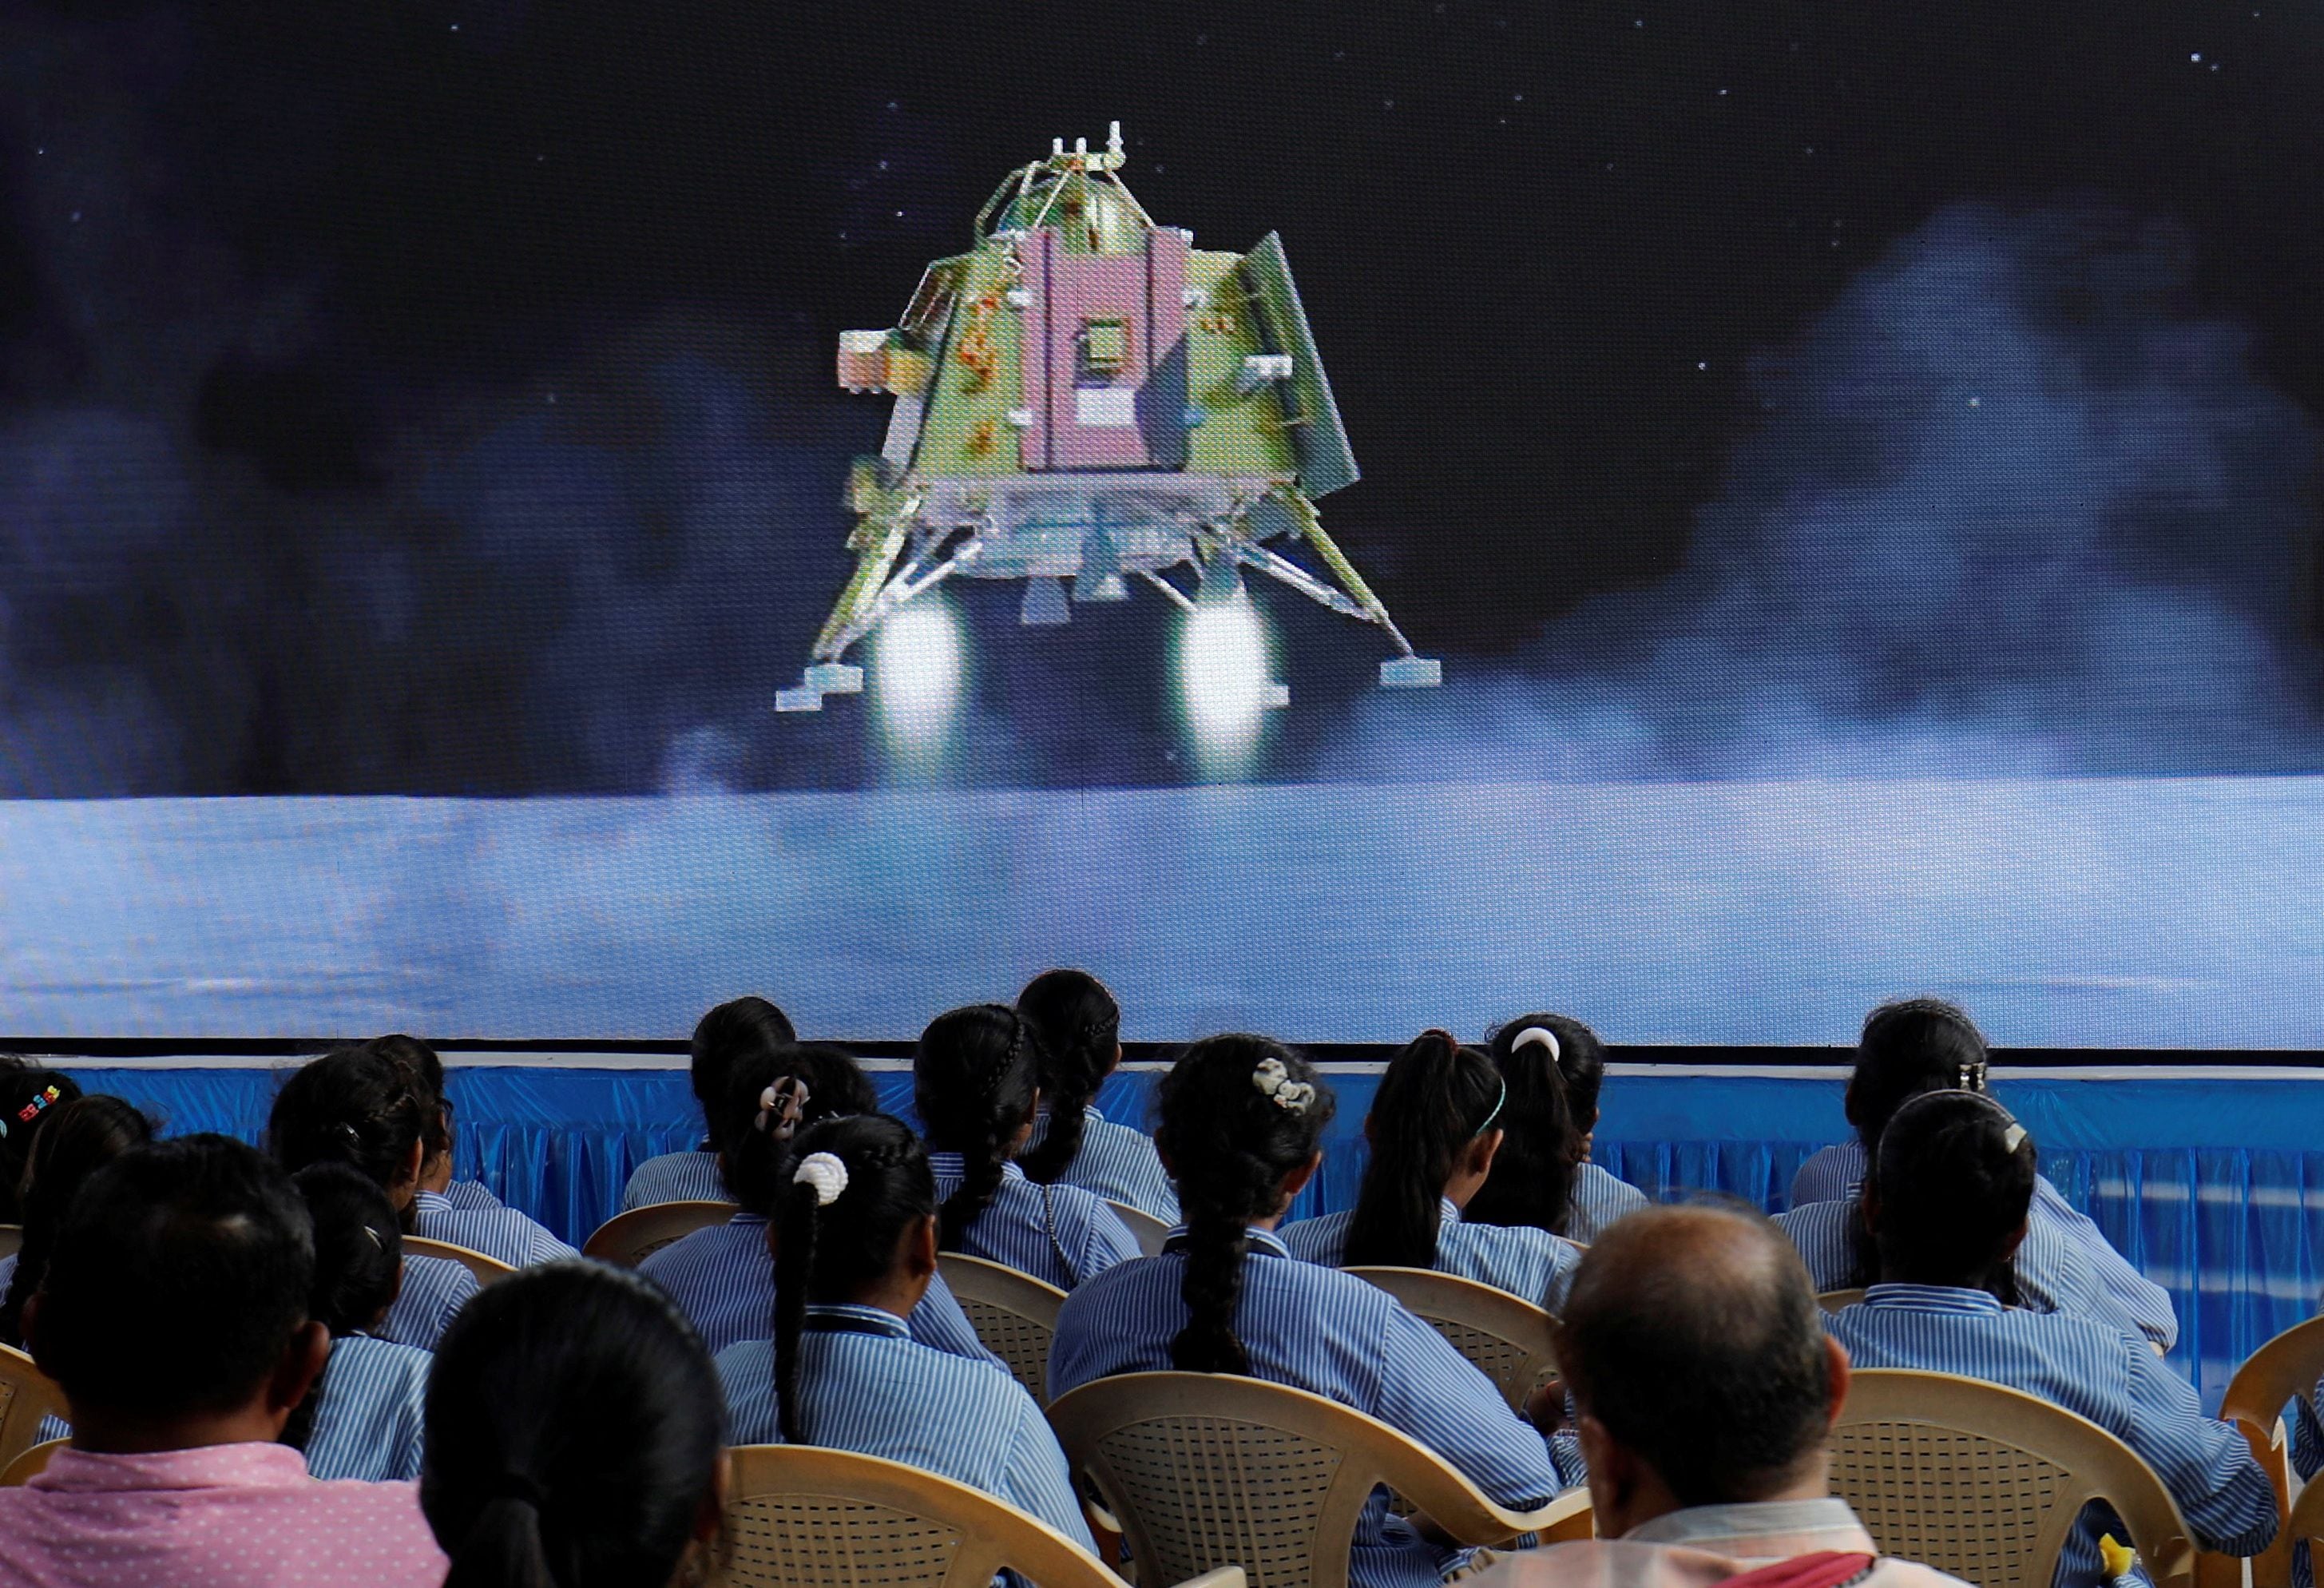 El viaje de Chandrayaan-3, que comenzó el 14 de julio, duró 40 días (REUTERS/Amit Dave)